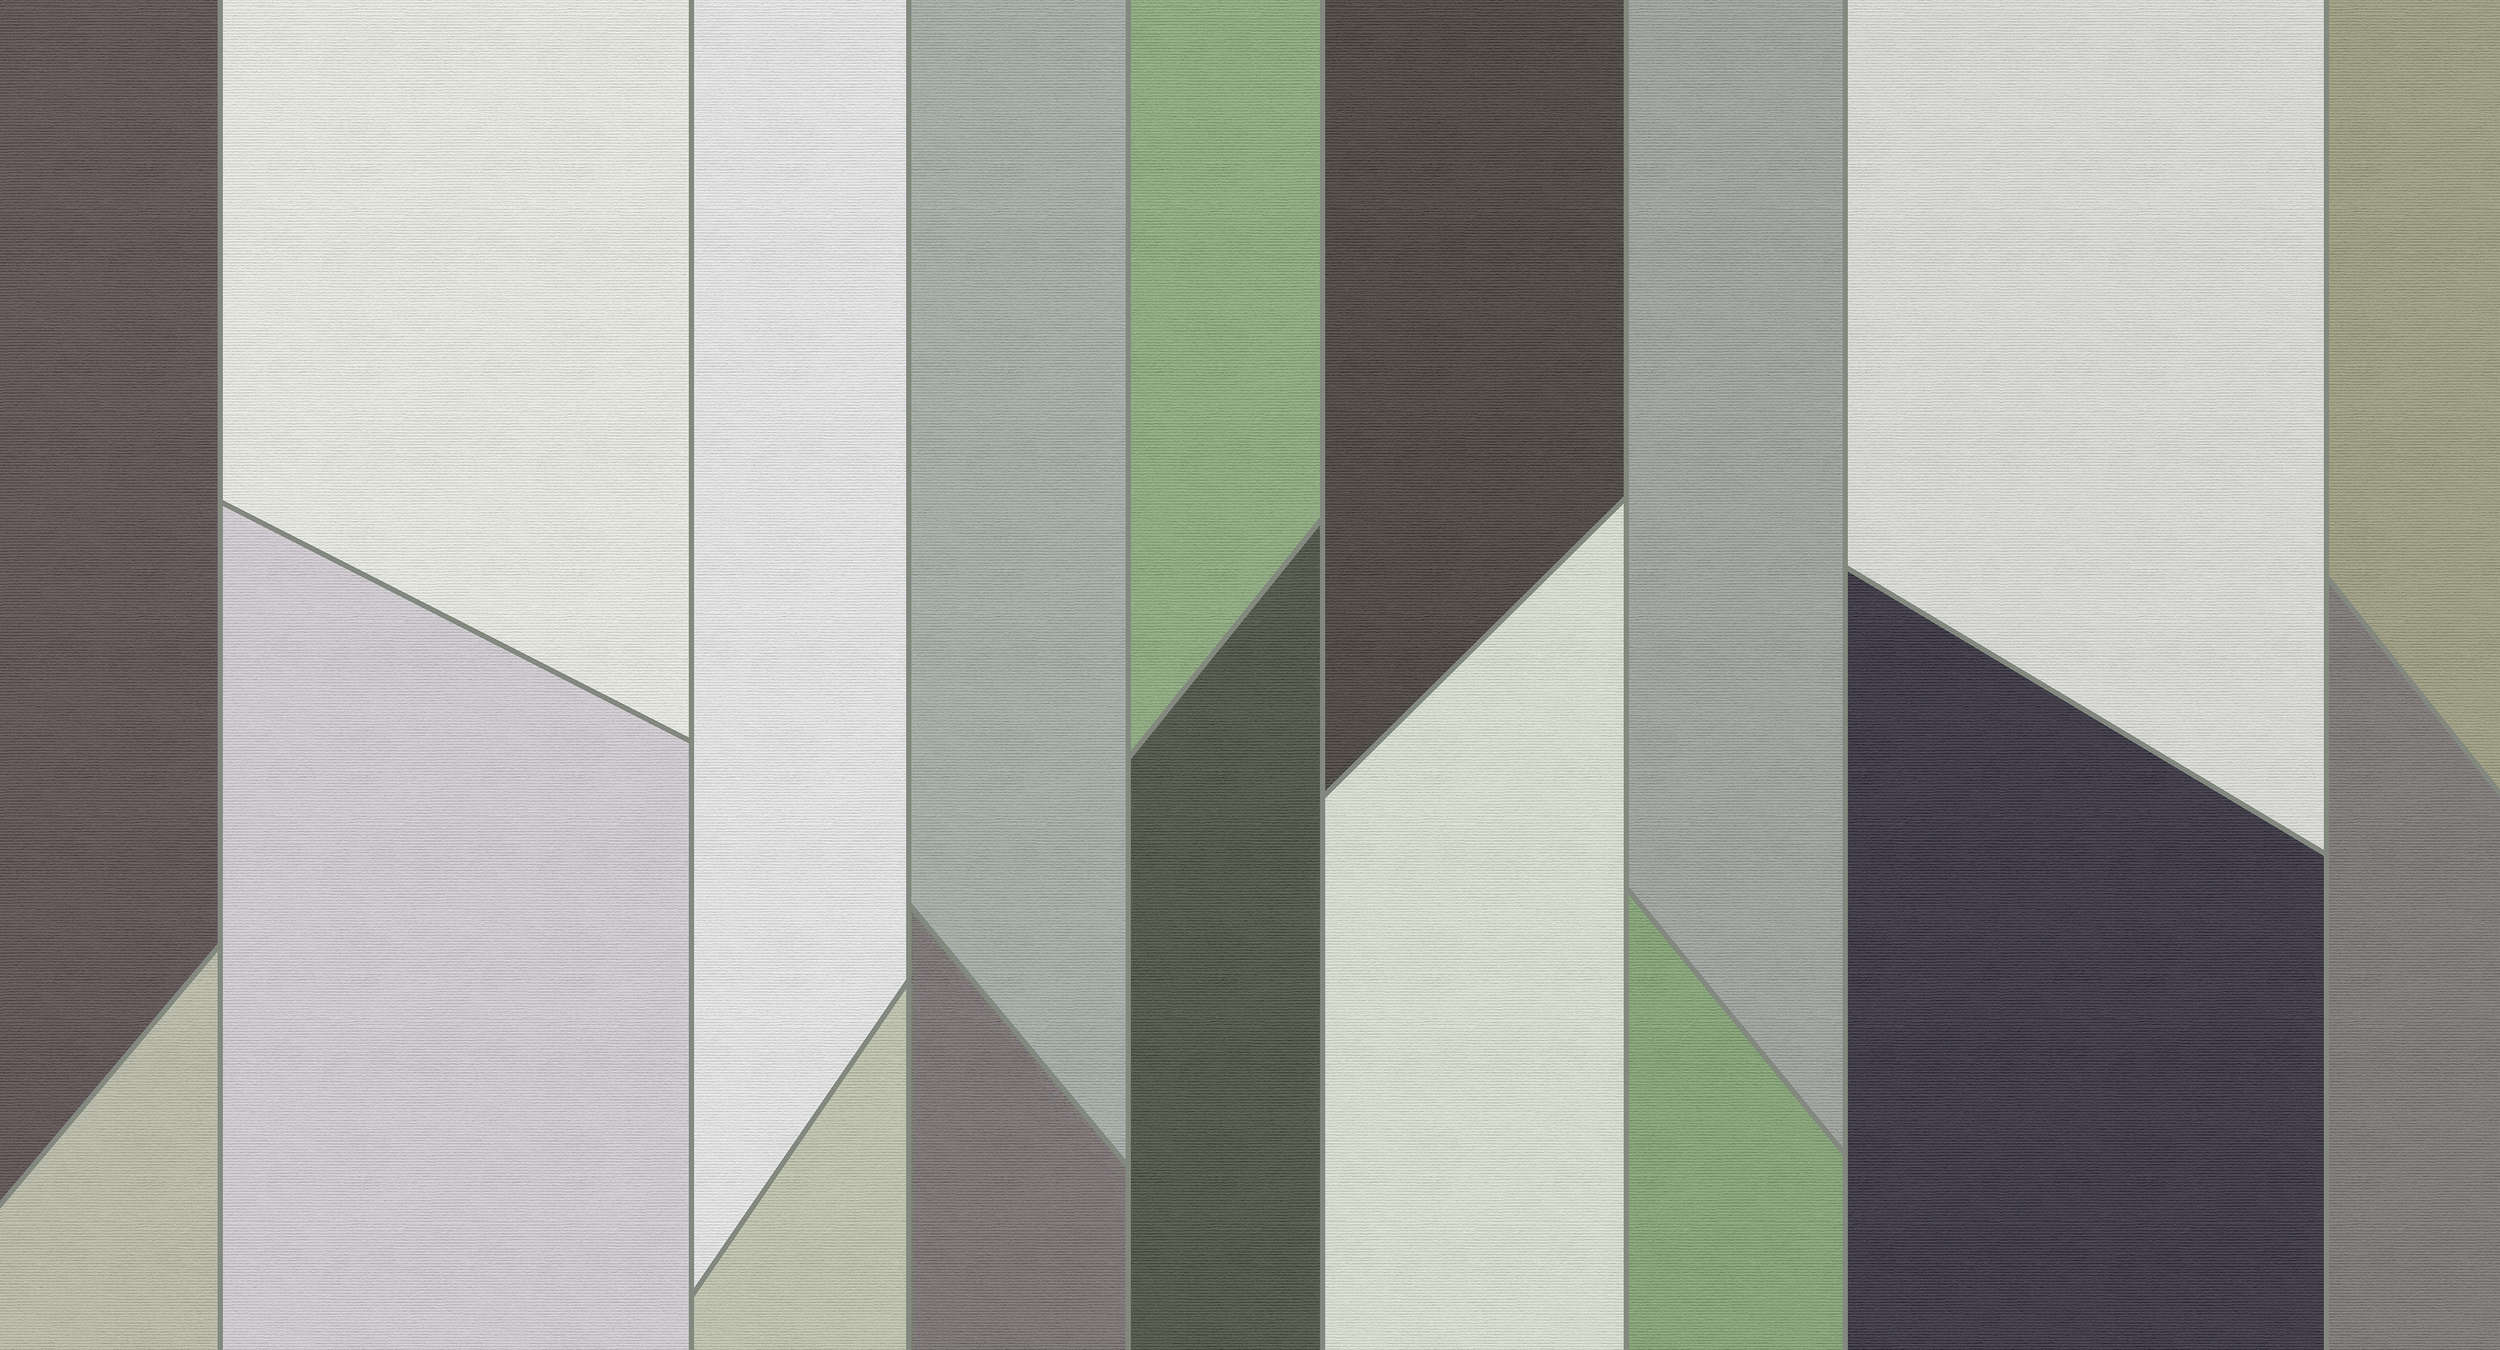             Geometry 3 - Papier peint rayé à structure côtelée au design rétro et coloré - vert, violet | À structure Intissé
        